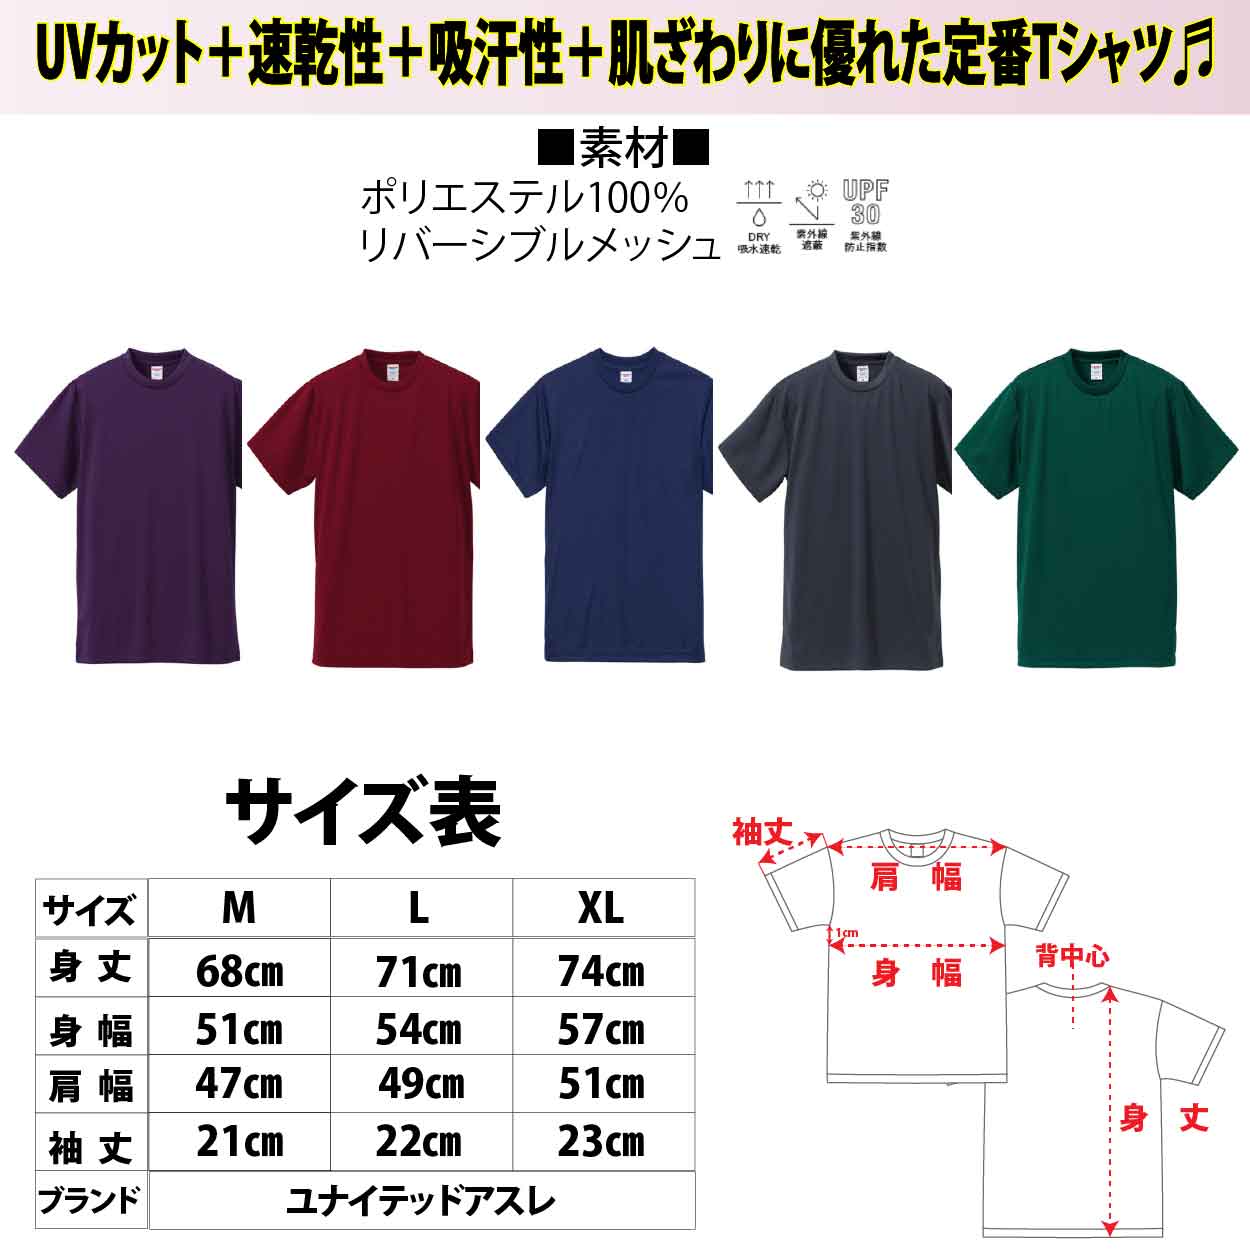 【在庫限り】５６３　JOKERオリジナル刺繍Tシャツ　M カラー:アイビーグリーン【限定生産】画像